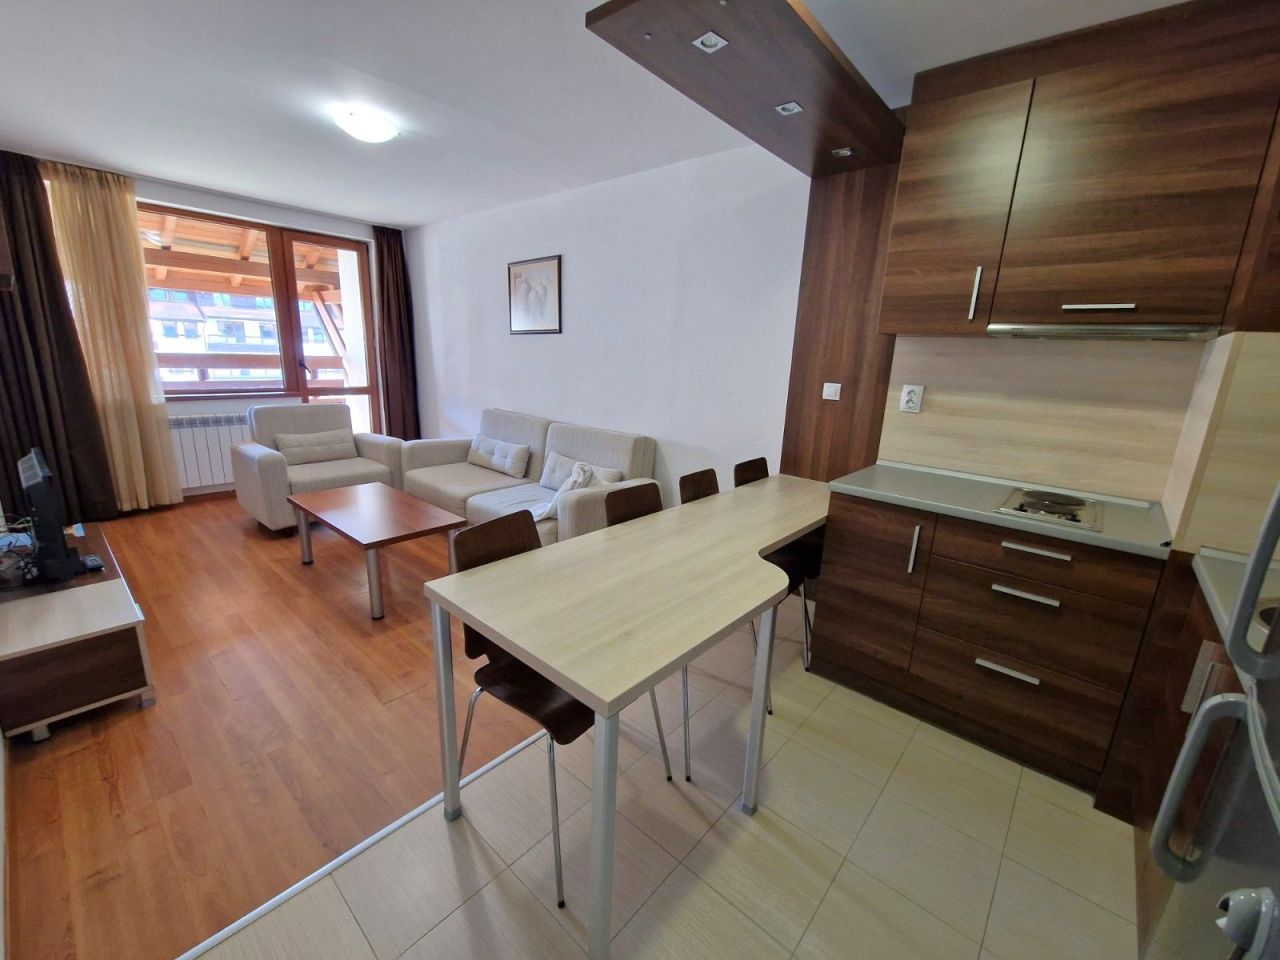 Apartment in Bansko, Bulgarien, 88 m2 - Foto 1